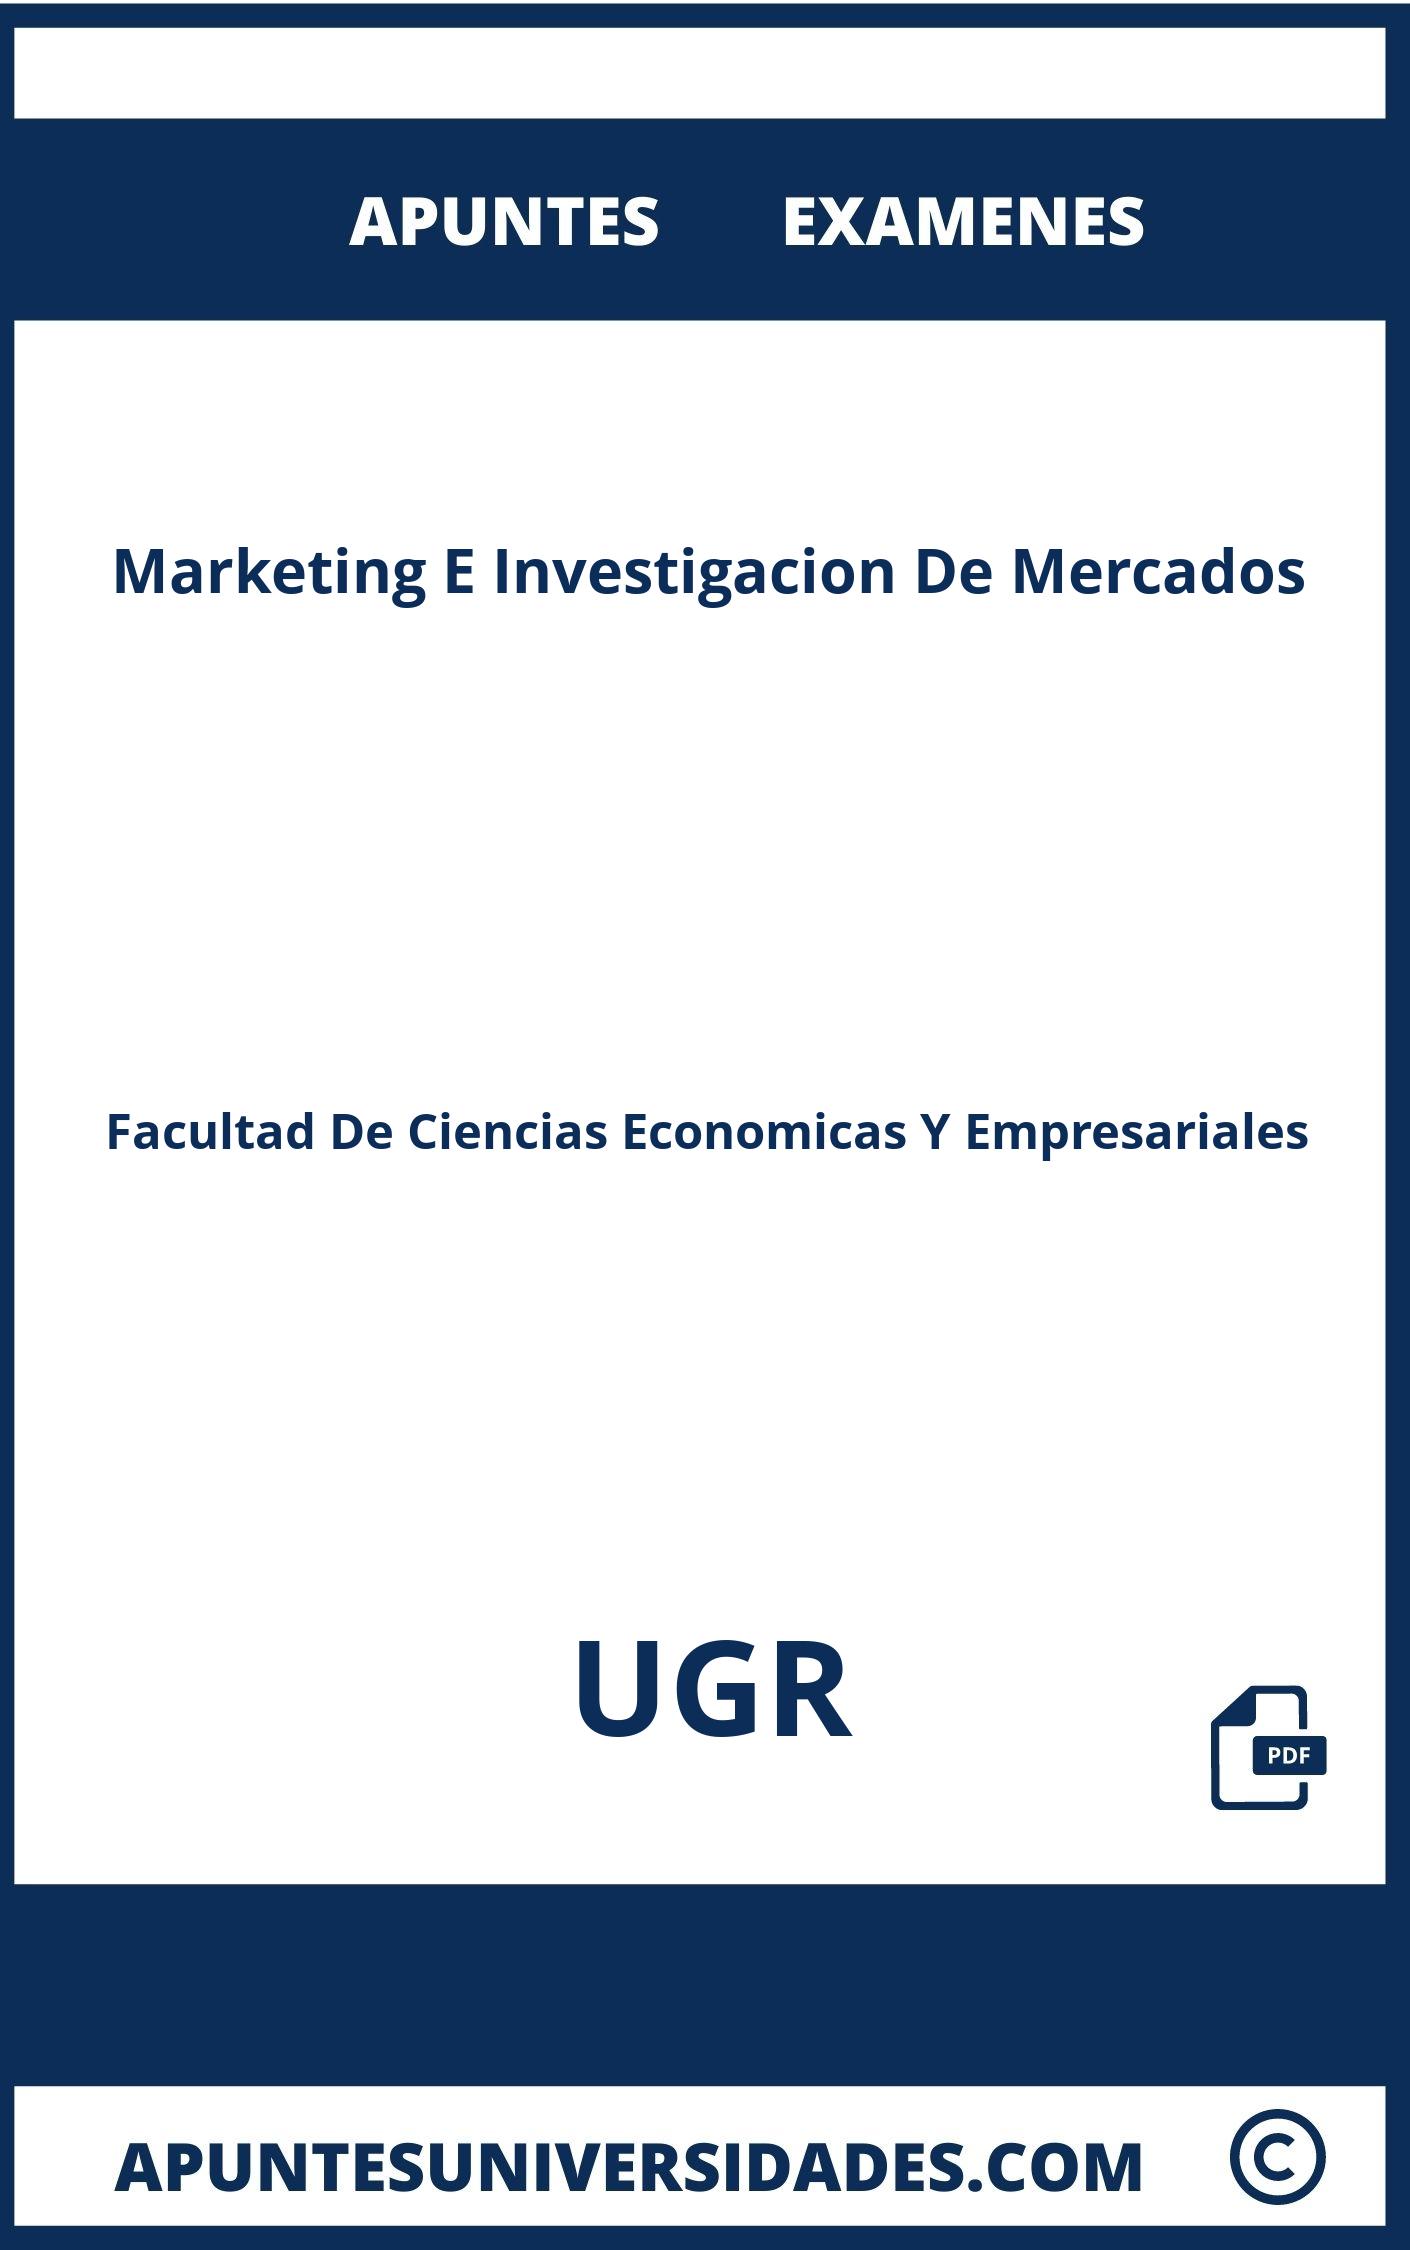 Apuntes y Examenes Marketing E Investigacion De Mercados UGR